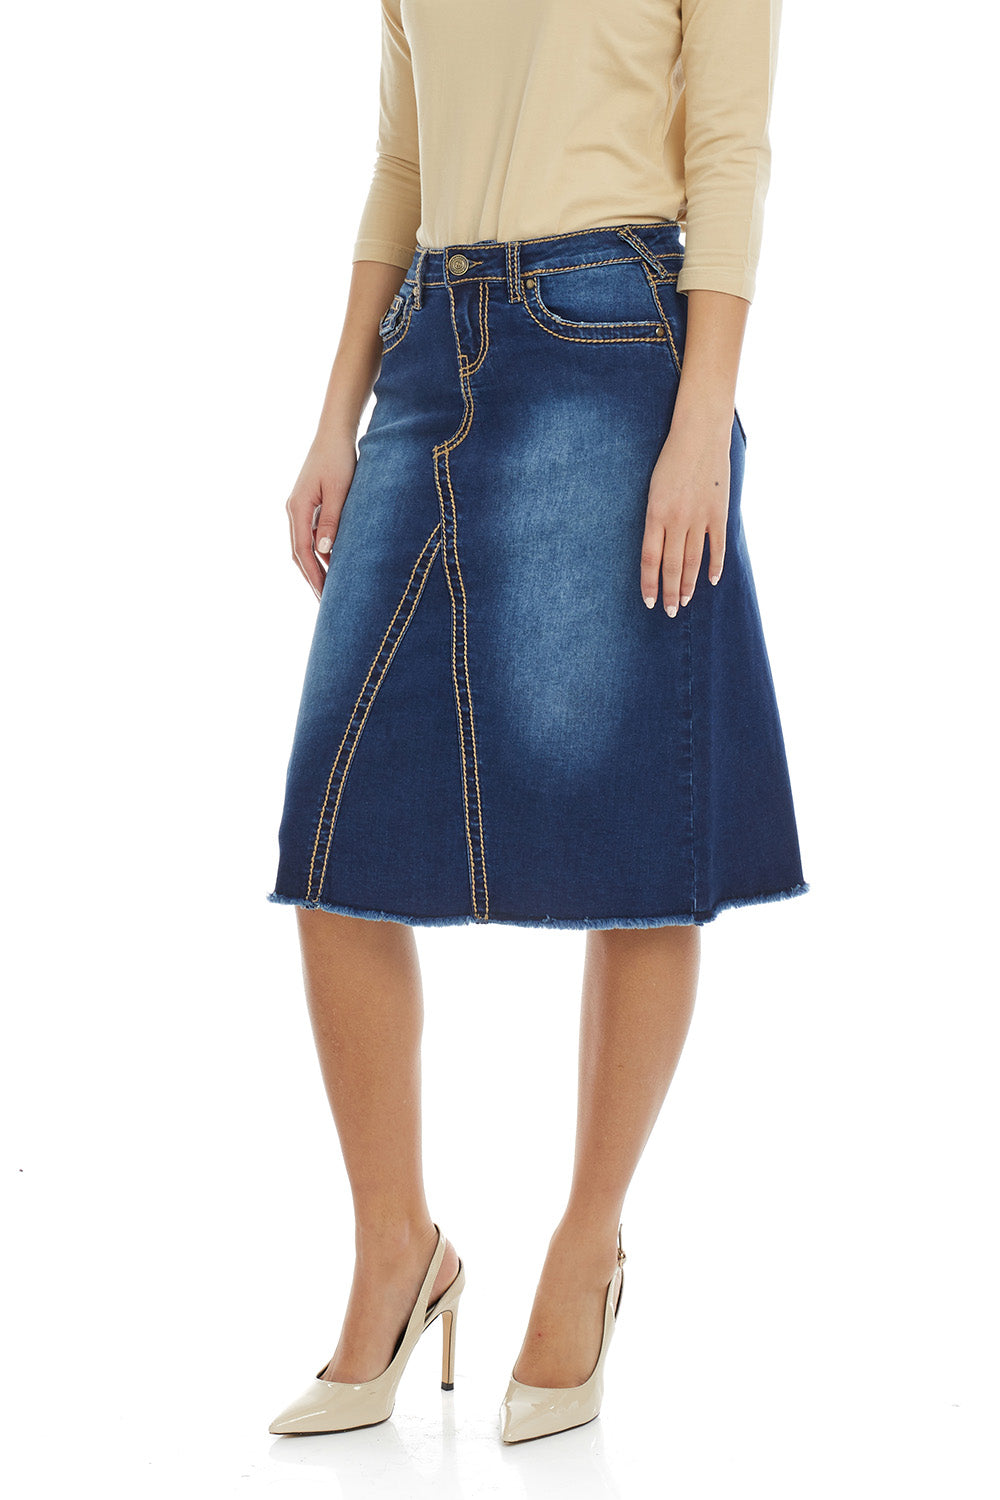 Esteez VICTORIA Skirt - Modest Below the Knee A-line Flary Jean Skirt for Women - BLUE